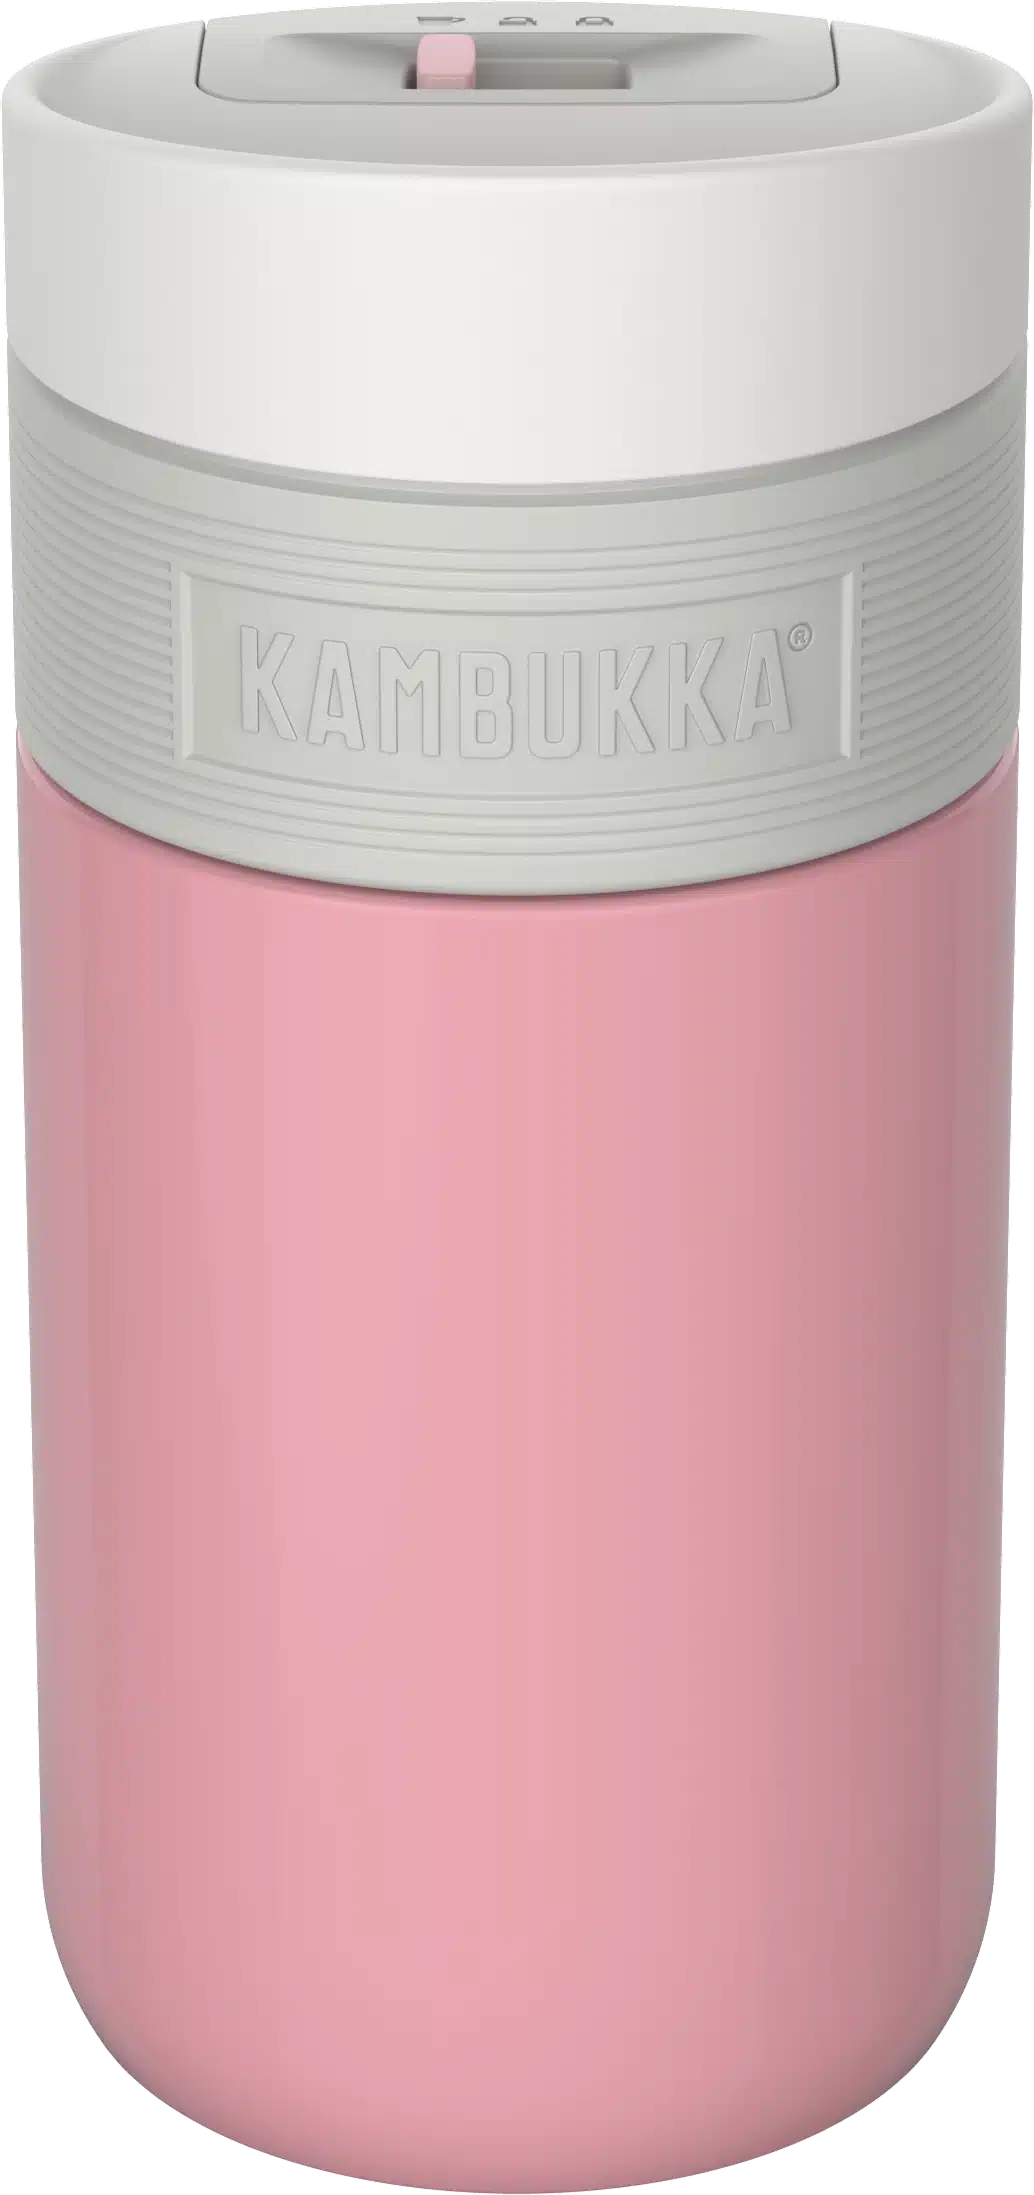 בקבוק שתיה תרמי 300 מ"ל ורוד Kambukka Etna Baby Pink